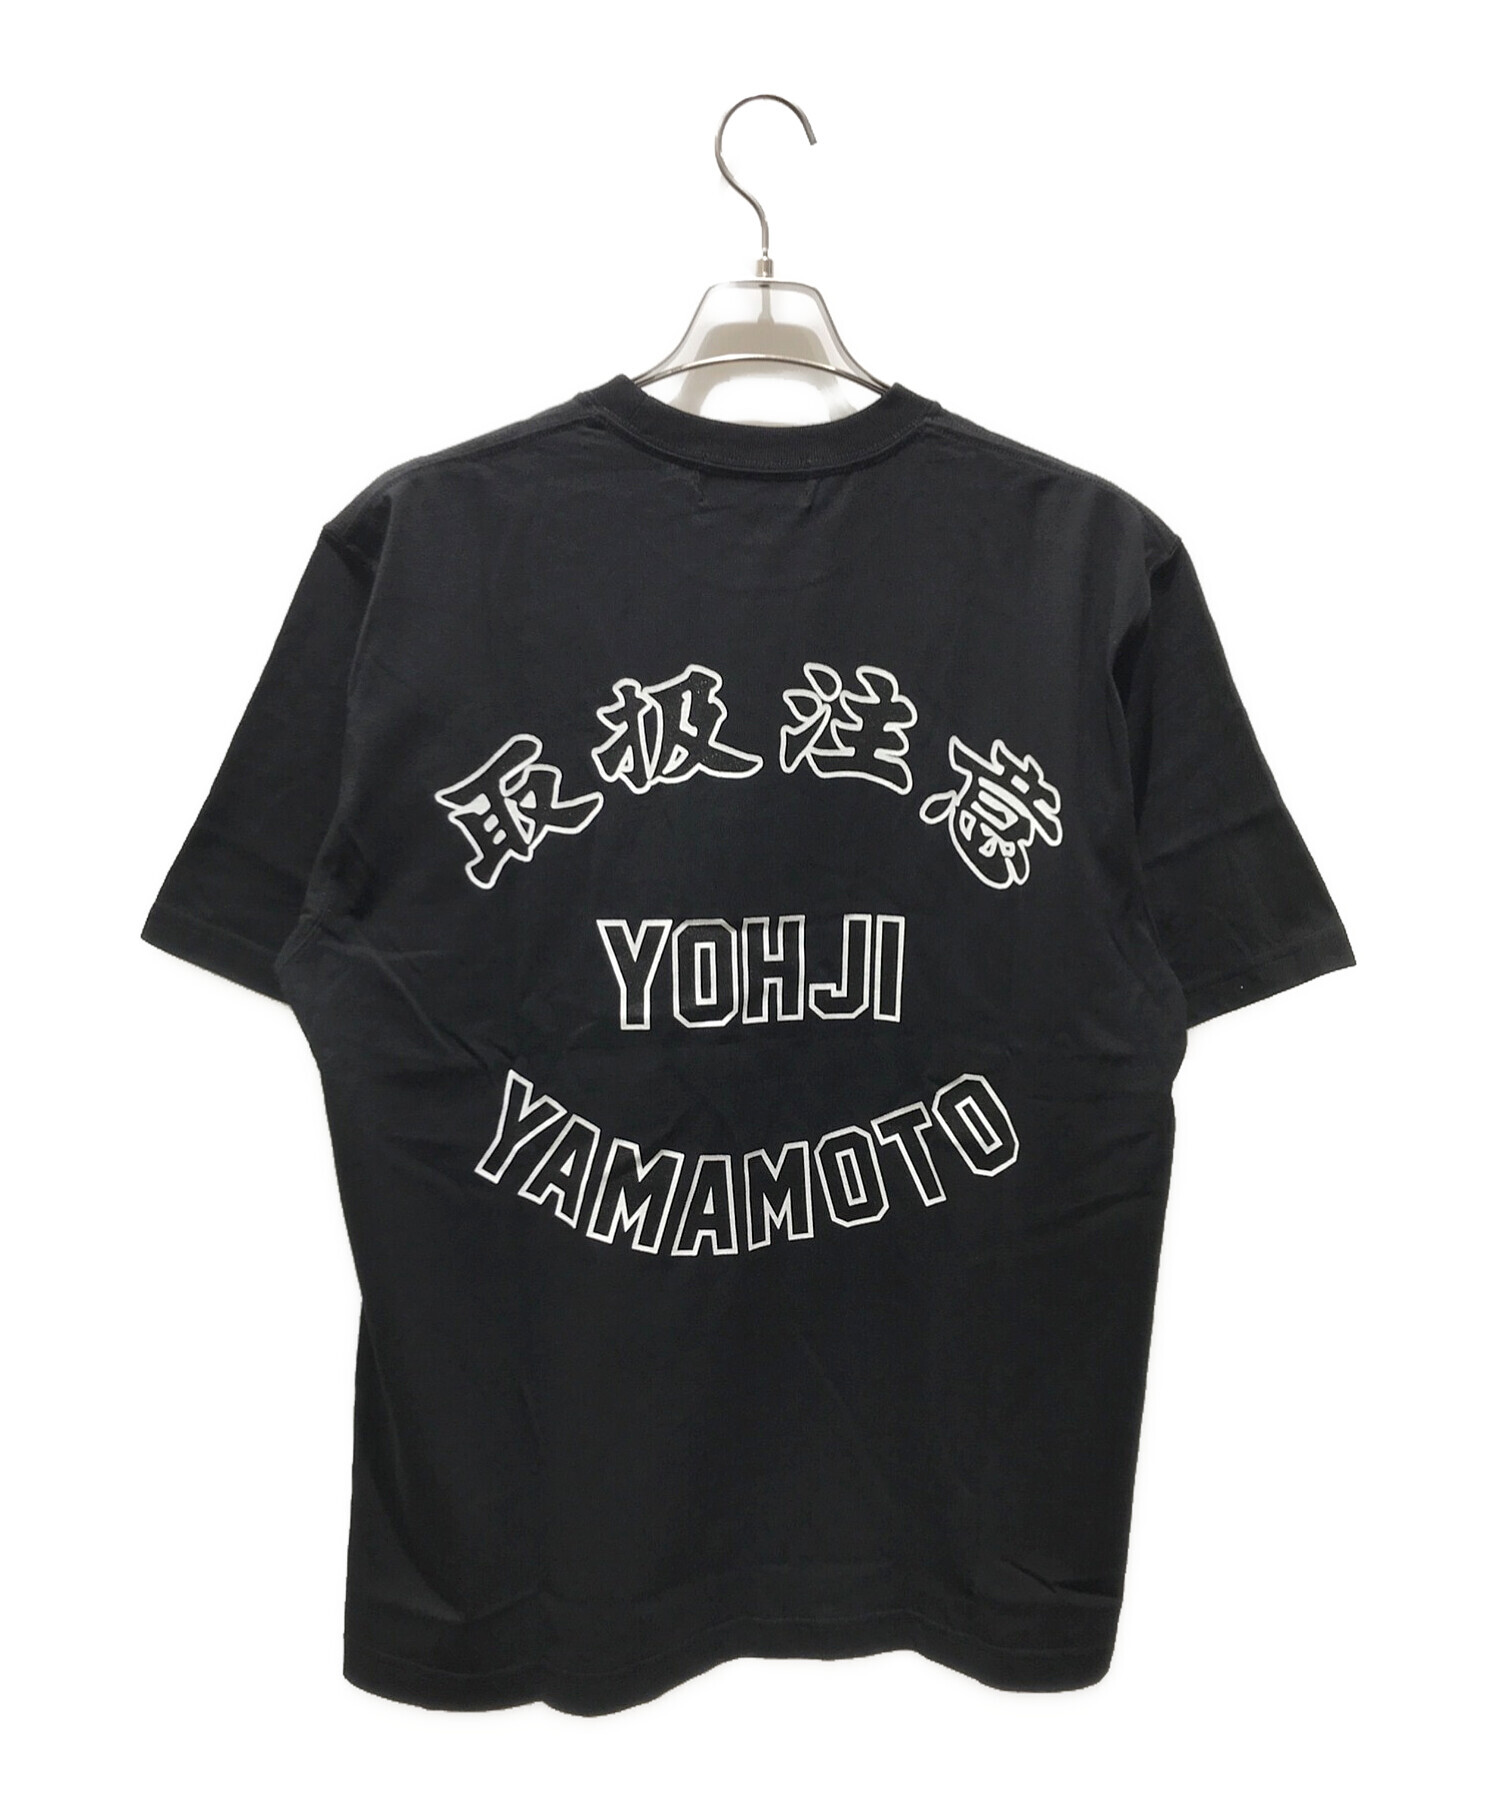 BlackEyePatch (ブラックアイパッチ) WILDSIDE YOHJI YAMAMOTO (ワイルドサイド ヨウジ ヤマモト)  プリントTシャツ ブラック サイズ:L 未使用品